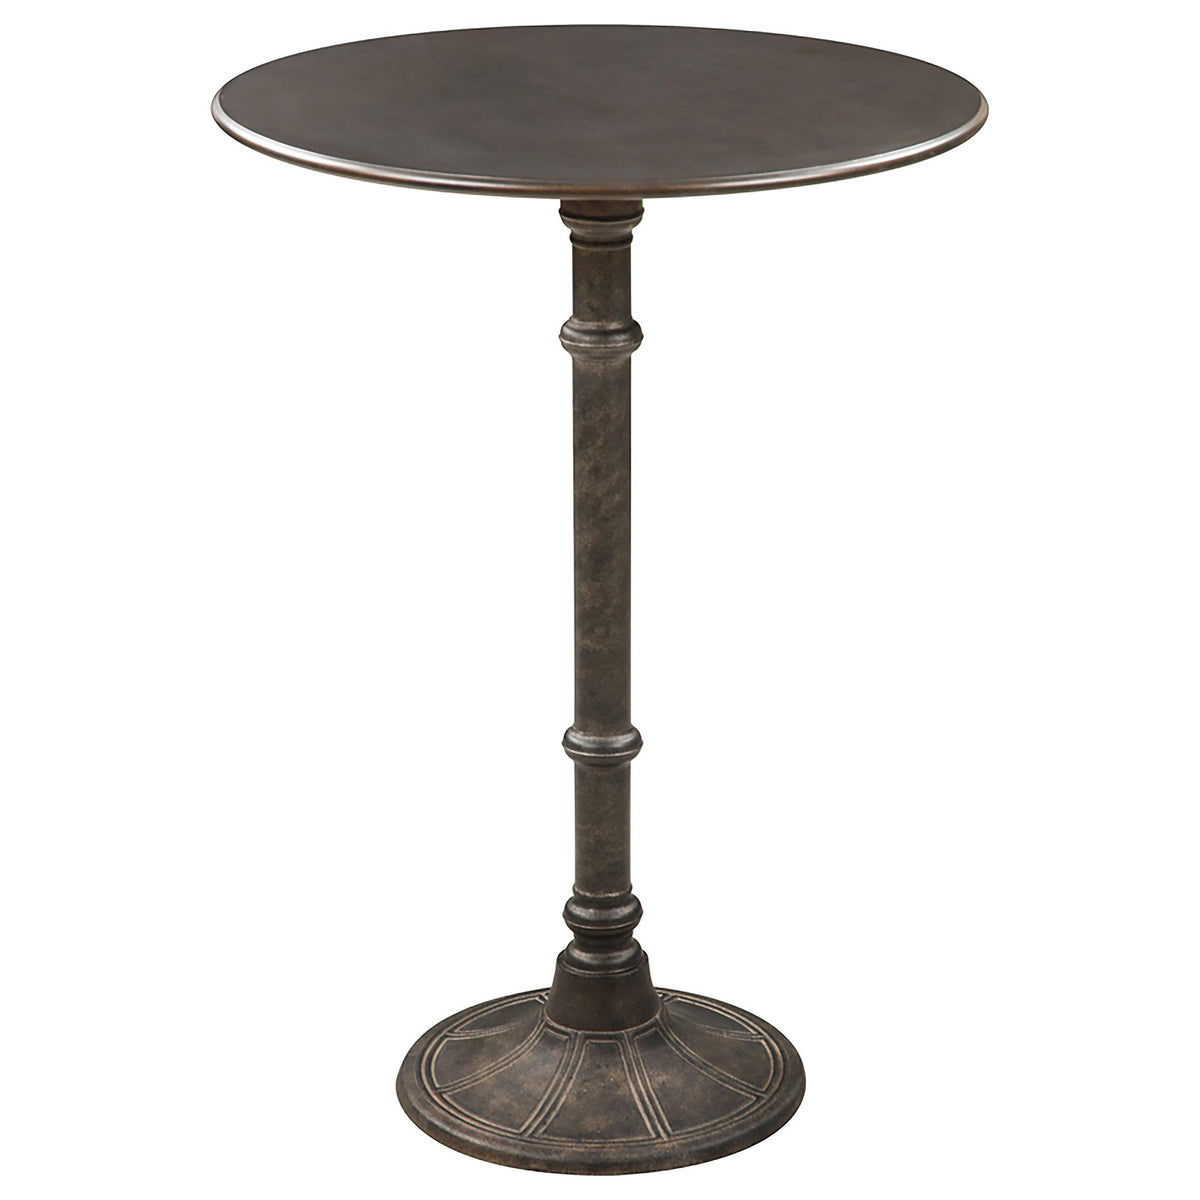 Oswego Round Bar Table Dark Russet and Antique Bronze  Half Price Furniture